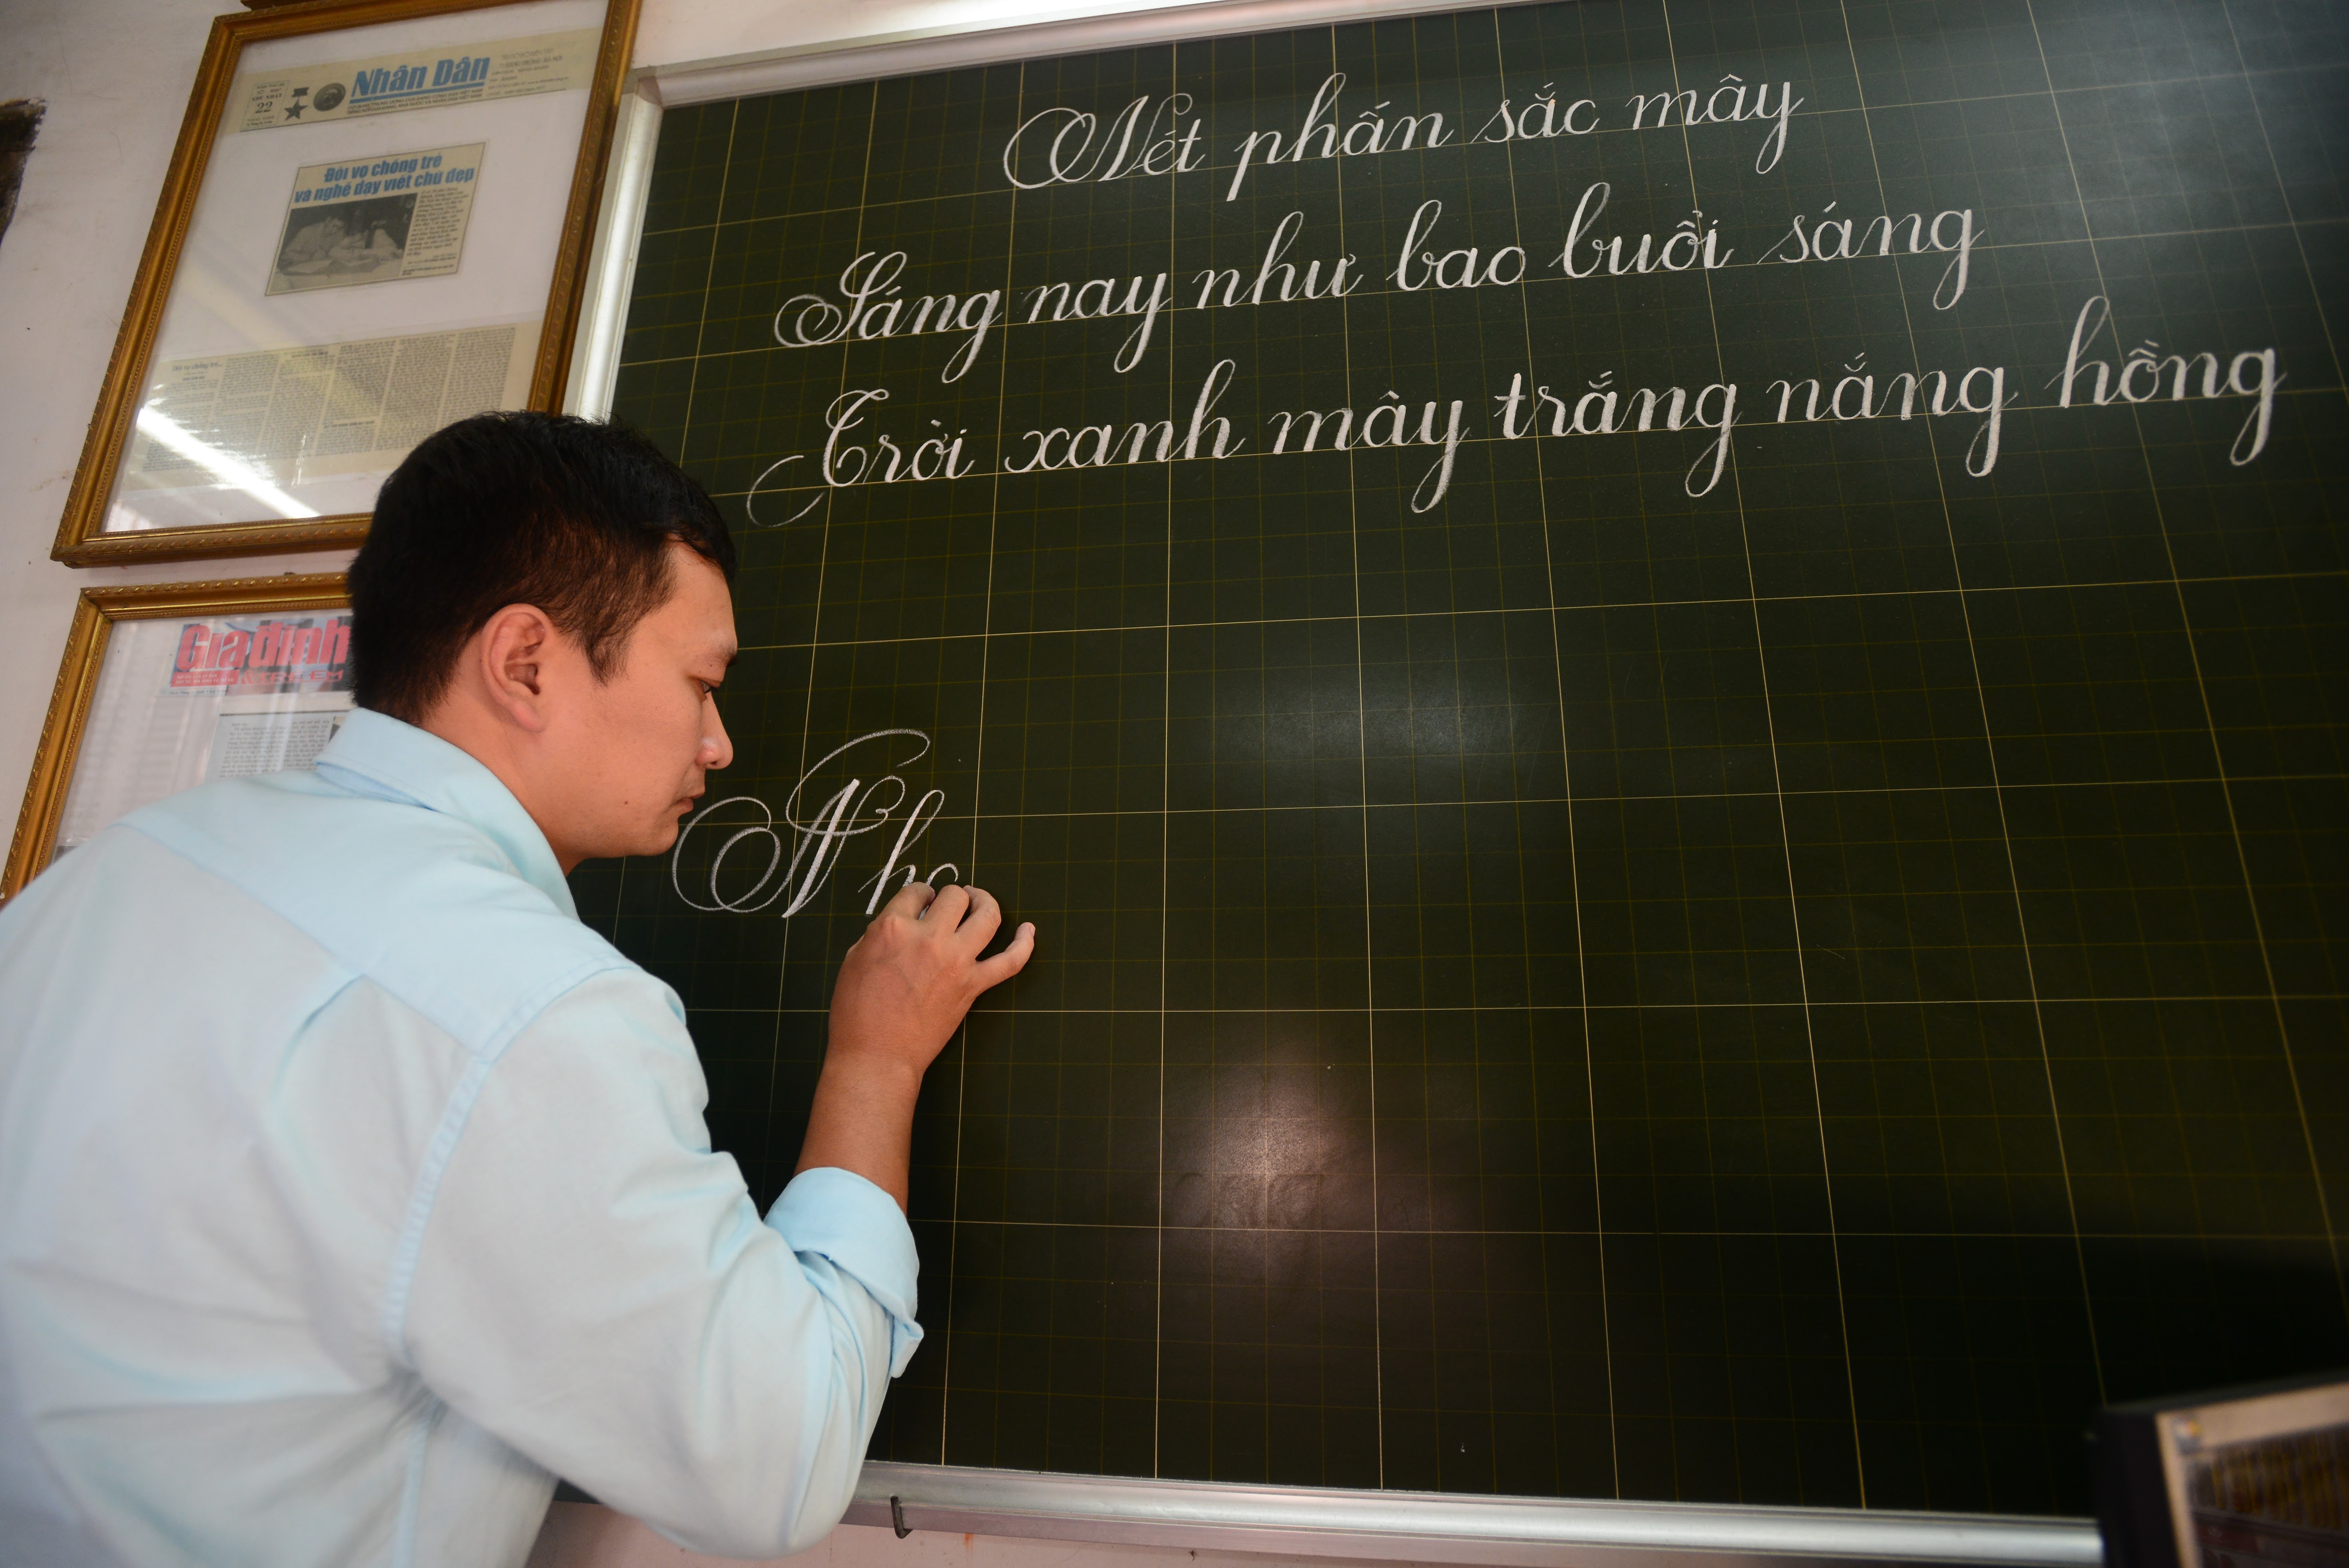 Những vết phấn in hằn trên bảng của người thầy đã đưa biết bao thế hệ học trò trưởng thành. Trong ảnh: Lớp học viết chữ đẹp của thầy Dương Tuấn, số 10 Hàng Mành (Hoàn Kiếm, Hà Nội) đến nay đã được 16 năm. Cả gia đình thầy đã 3 đời dạy viết chữ đẹp cho các em học sinh. (Ảnh: Minh Sơn/Vietnam+)